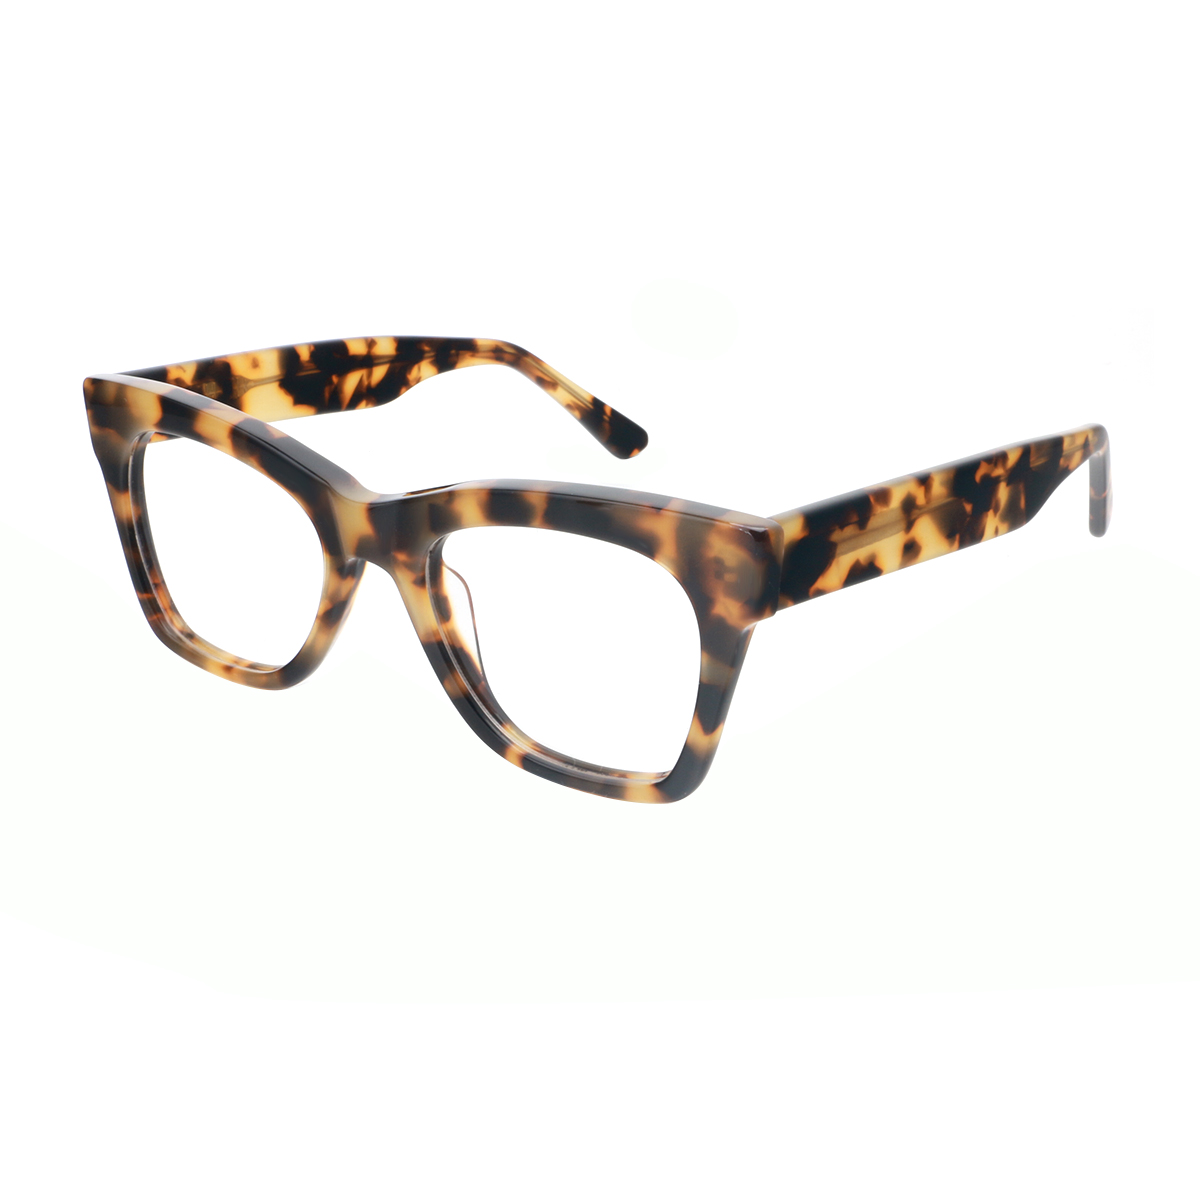 Alcestis - Cat-eye Demi Reading Glasses for Women